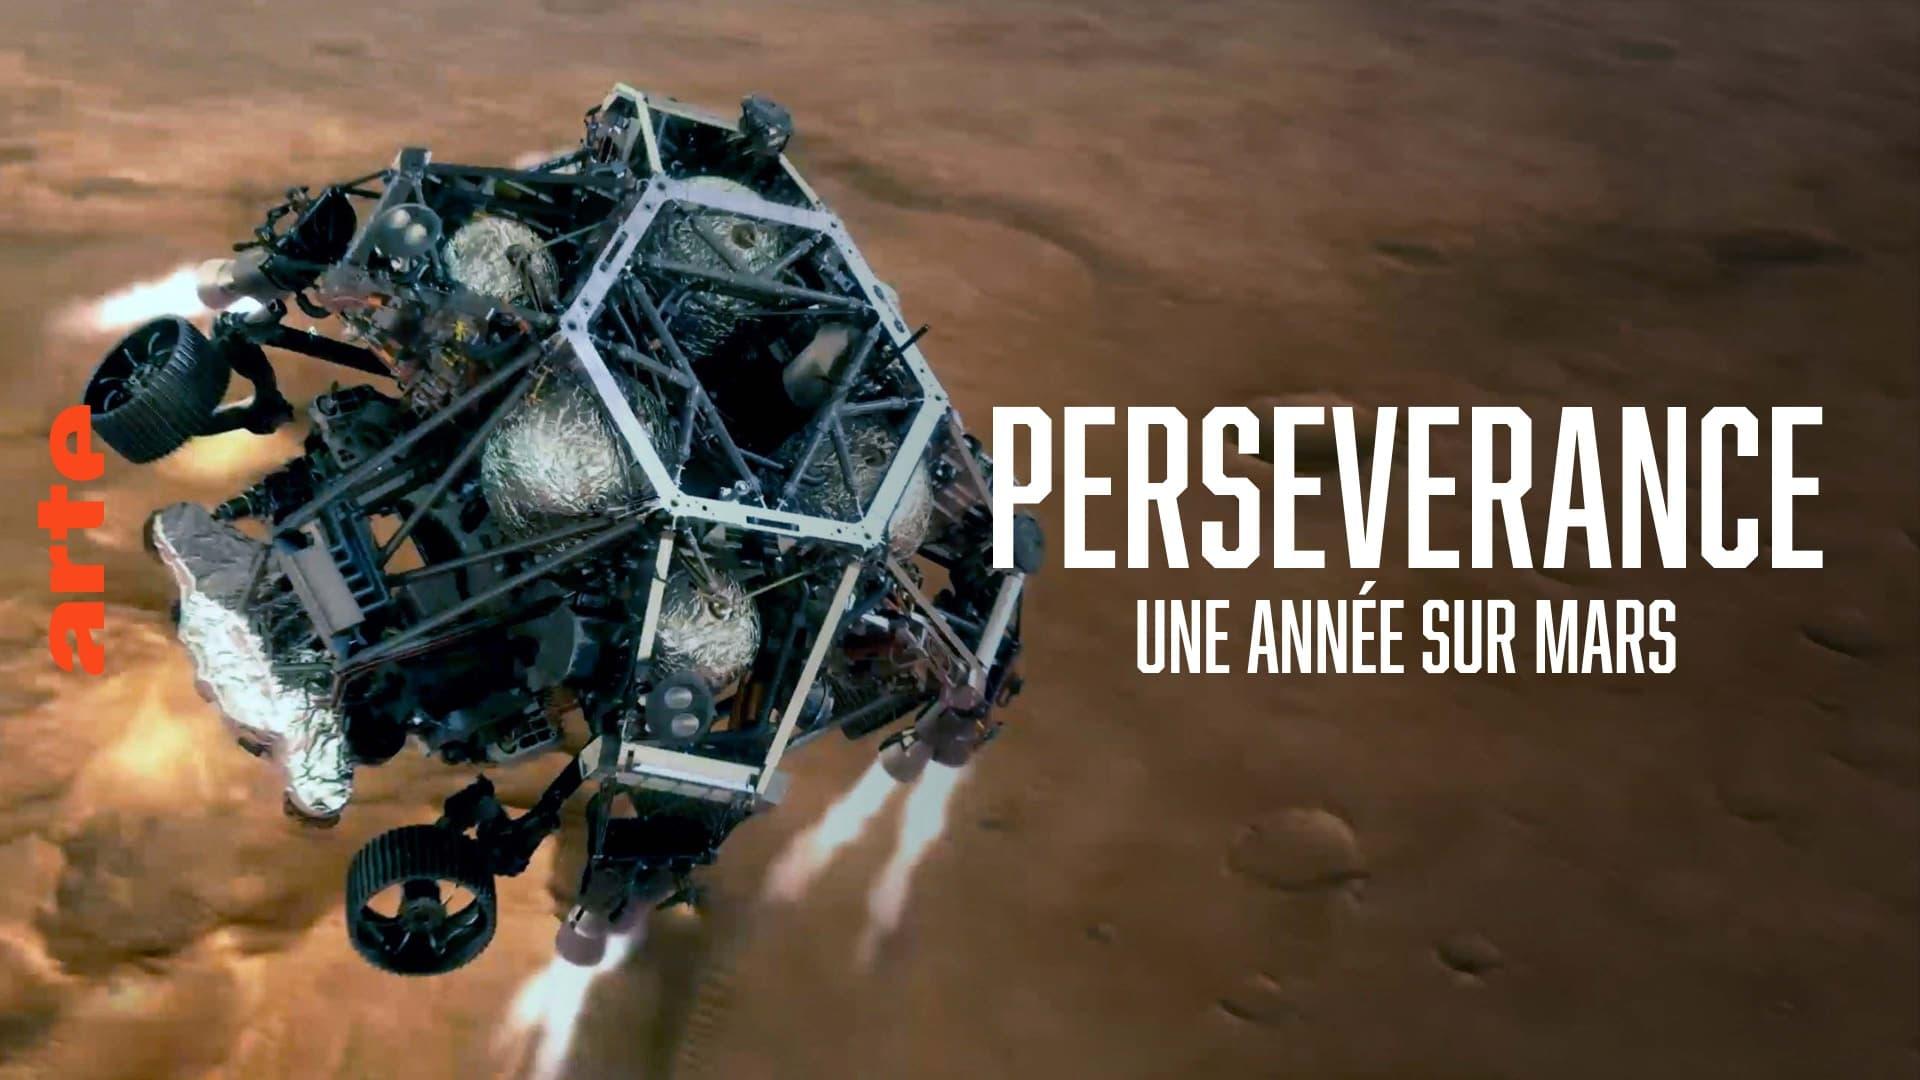 Perseverance, une année sur Mars backdrop